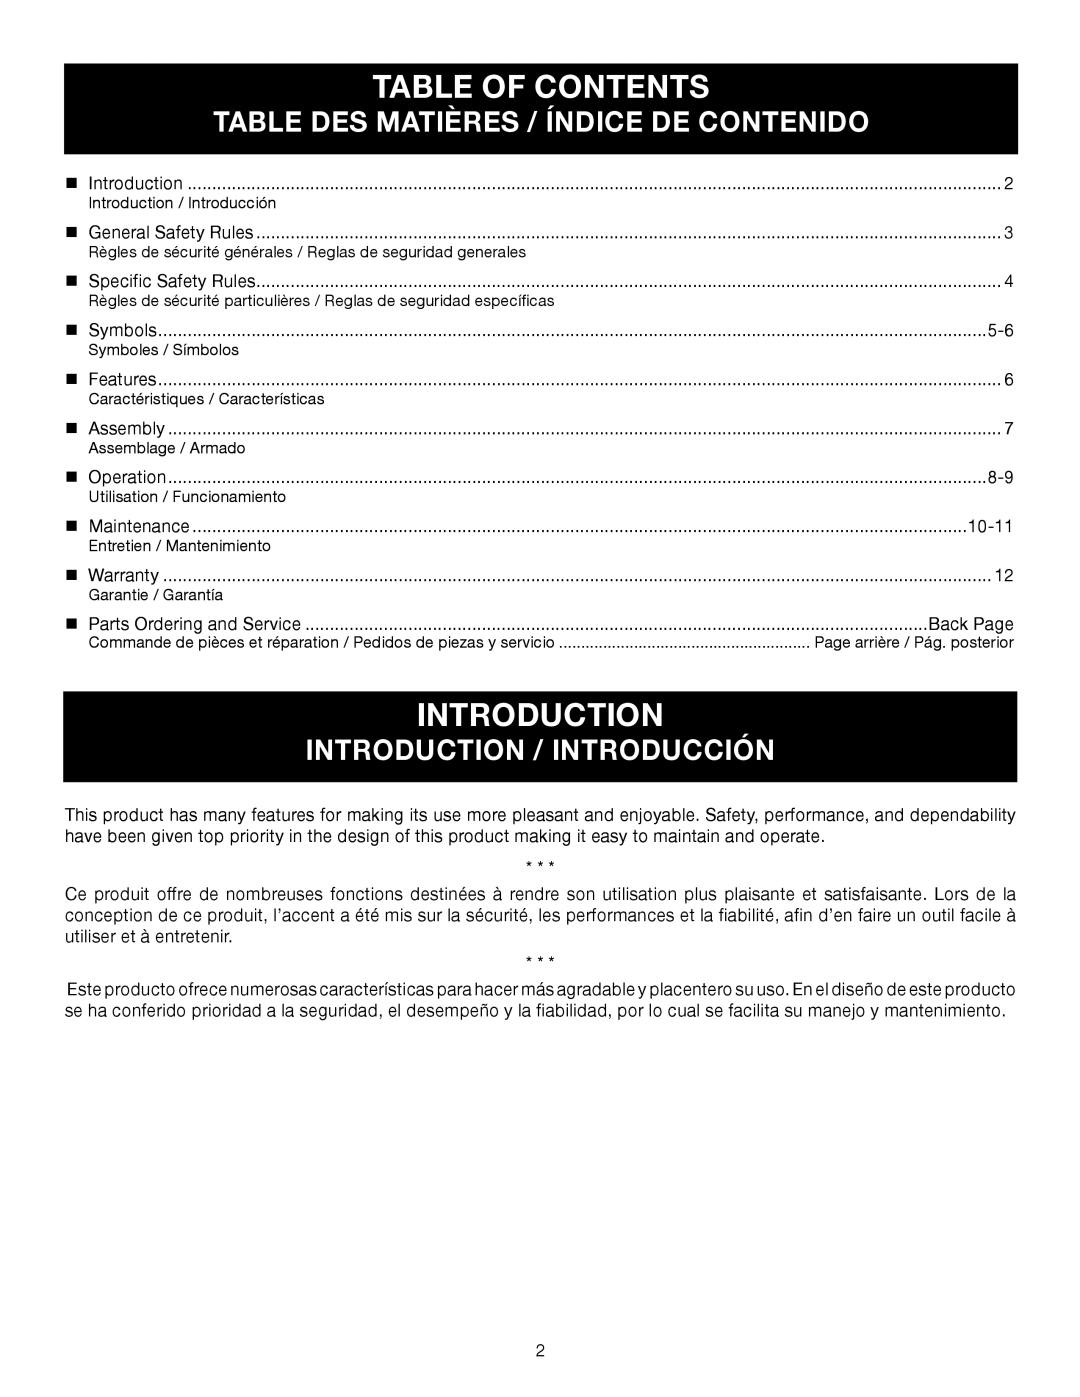 Ryobi RY24600 Table Of Contents, Table Des Matières / Índice De Contenido, Introduction / Introducción 